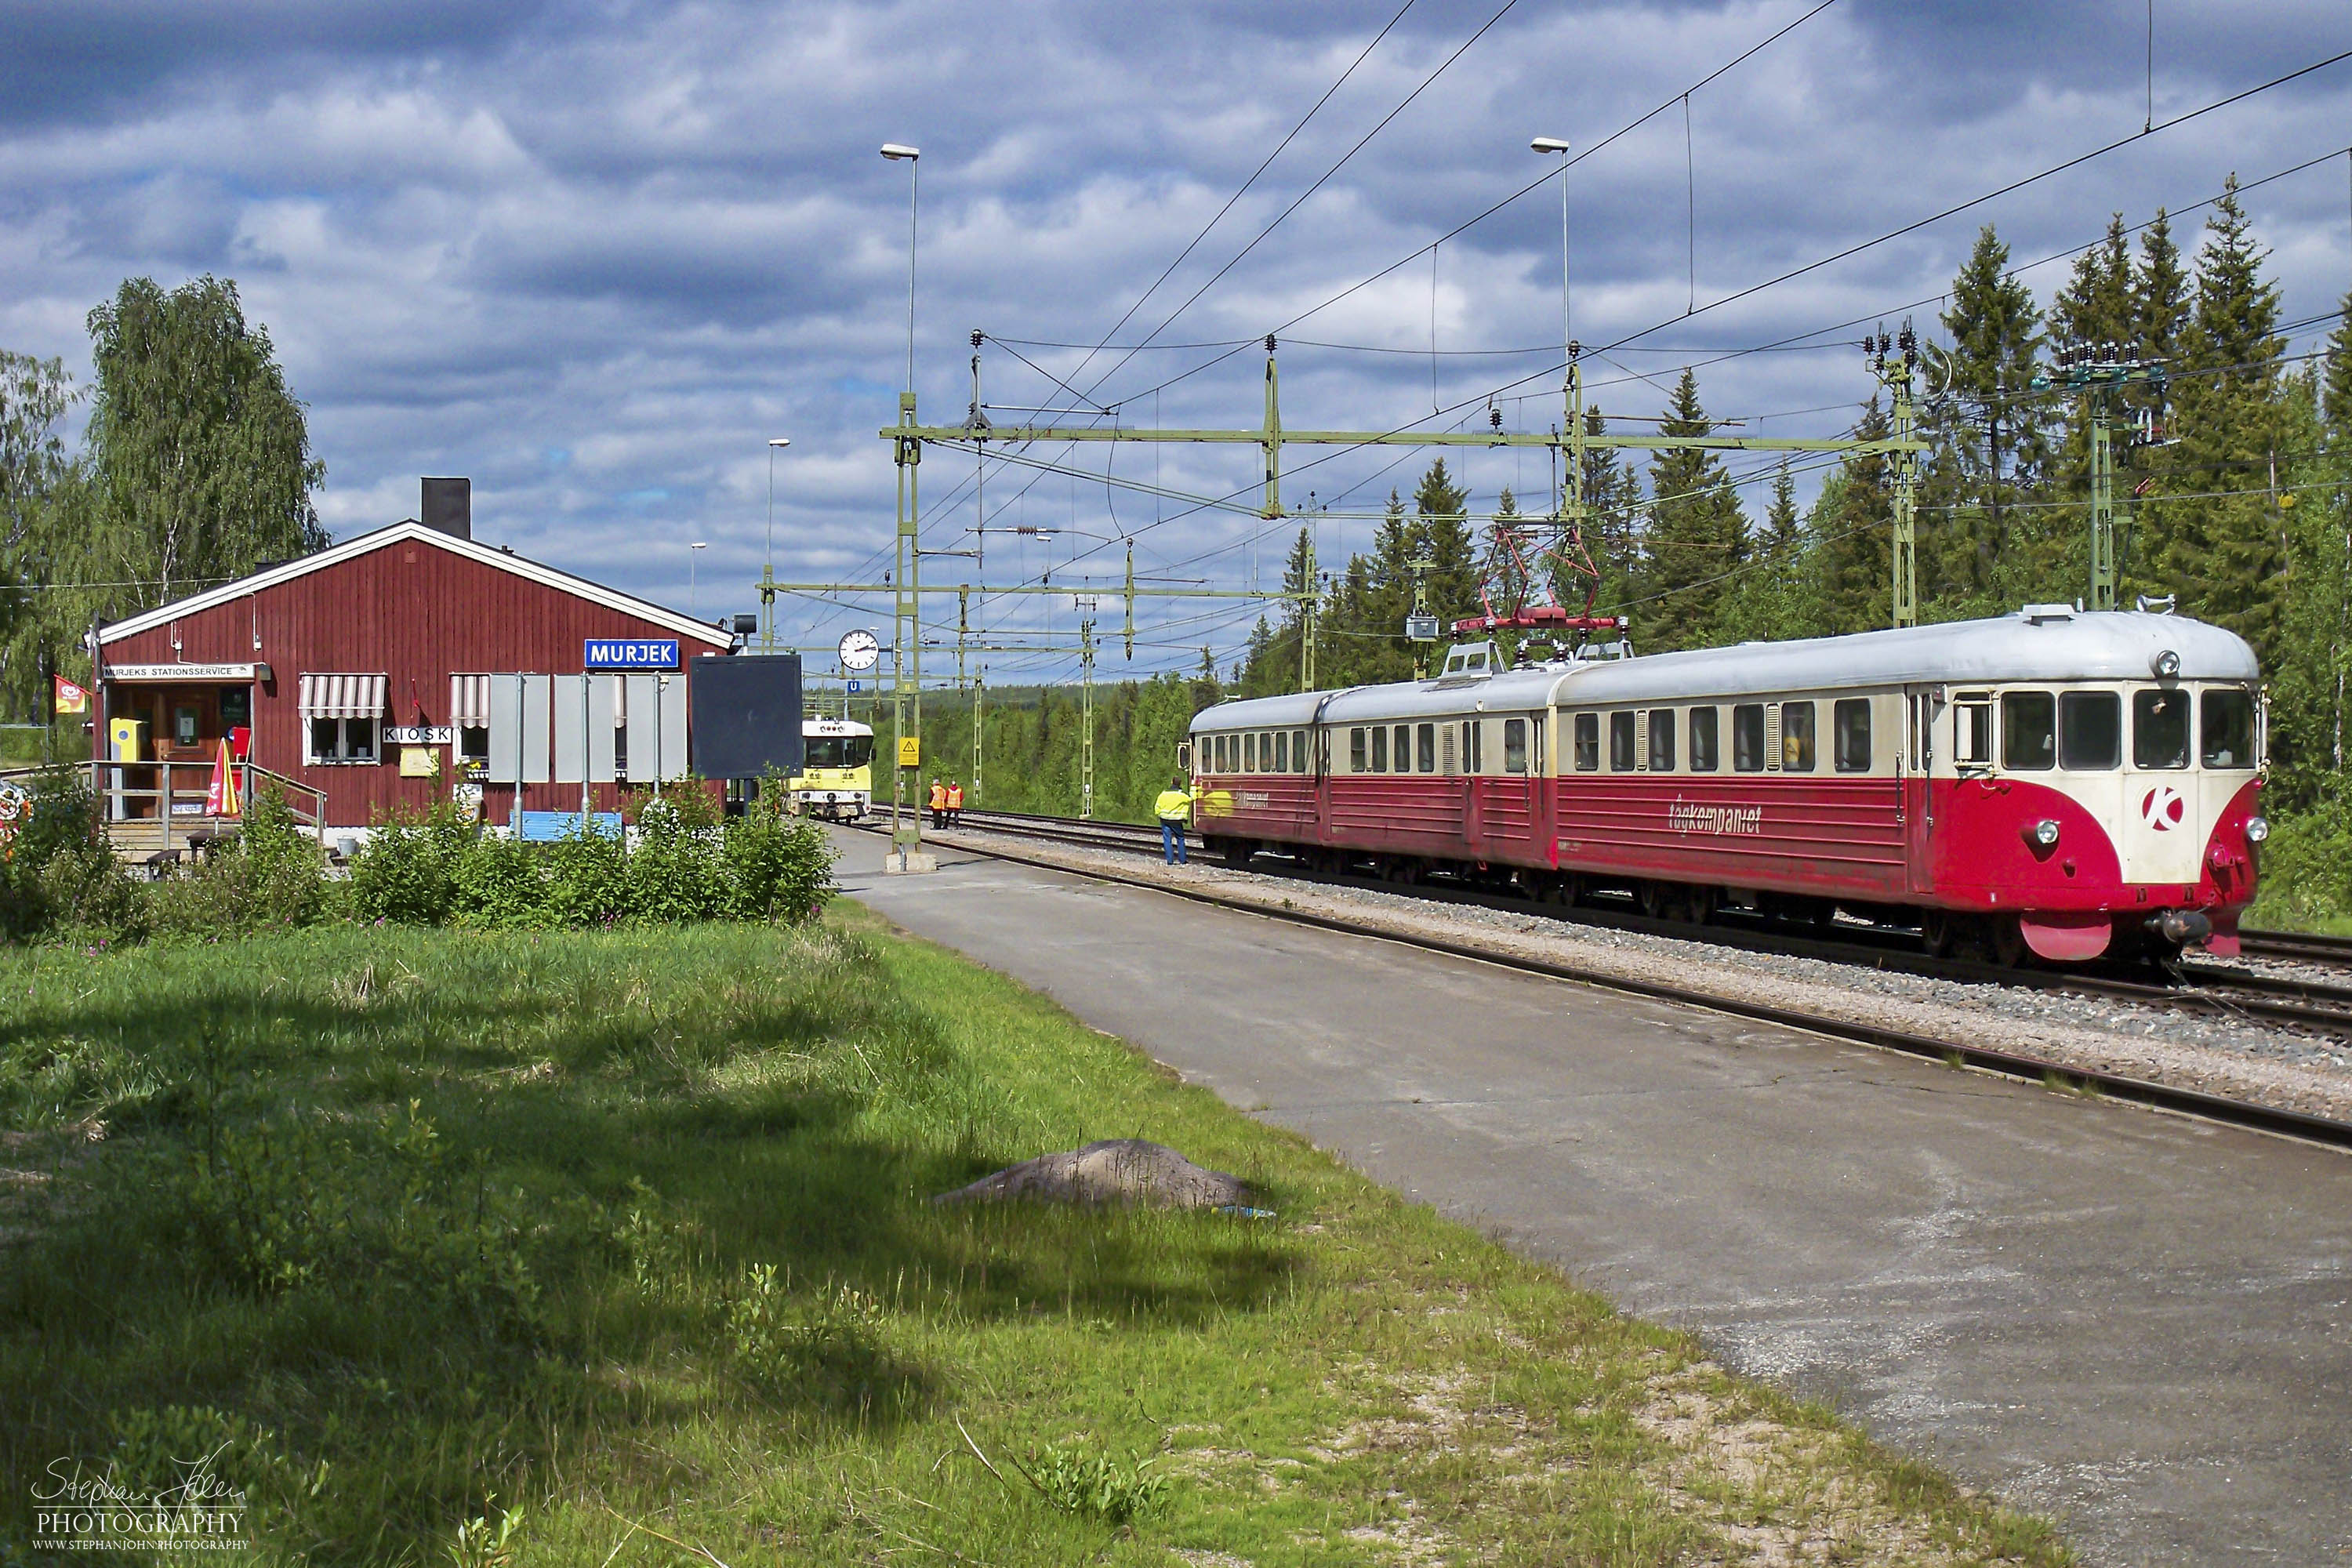 X20 auf dem Weg nach Kiruna hat einen Betriebshalt in Murjek